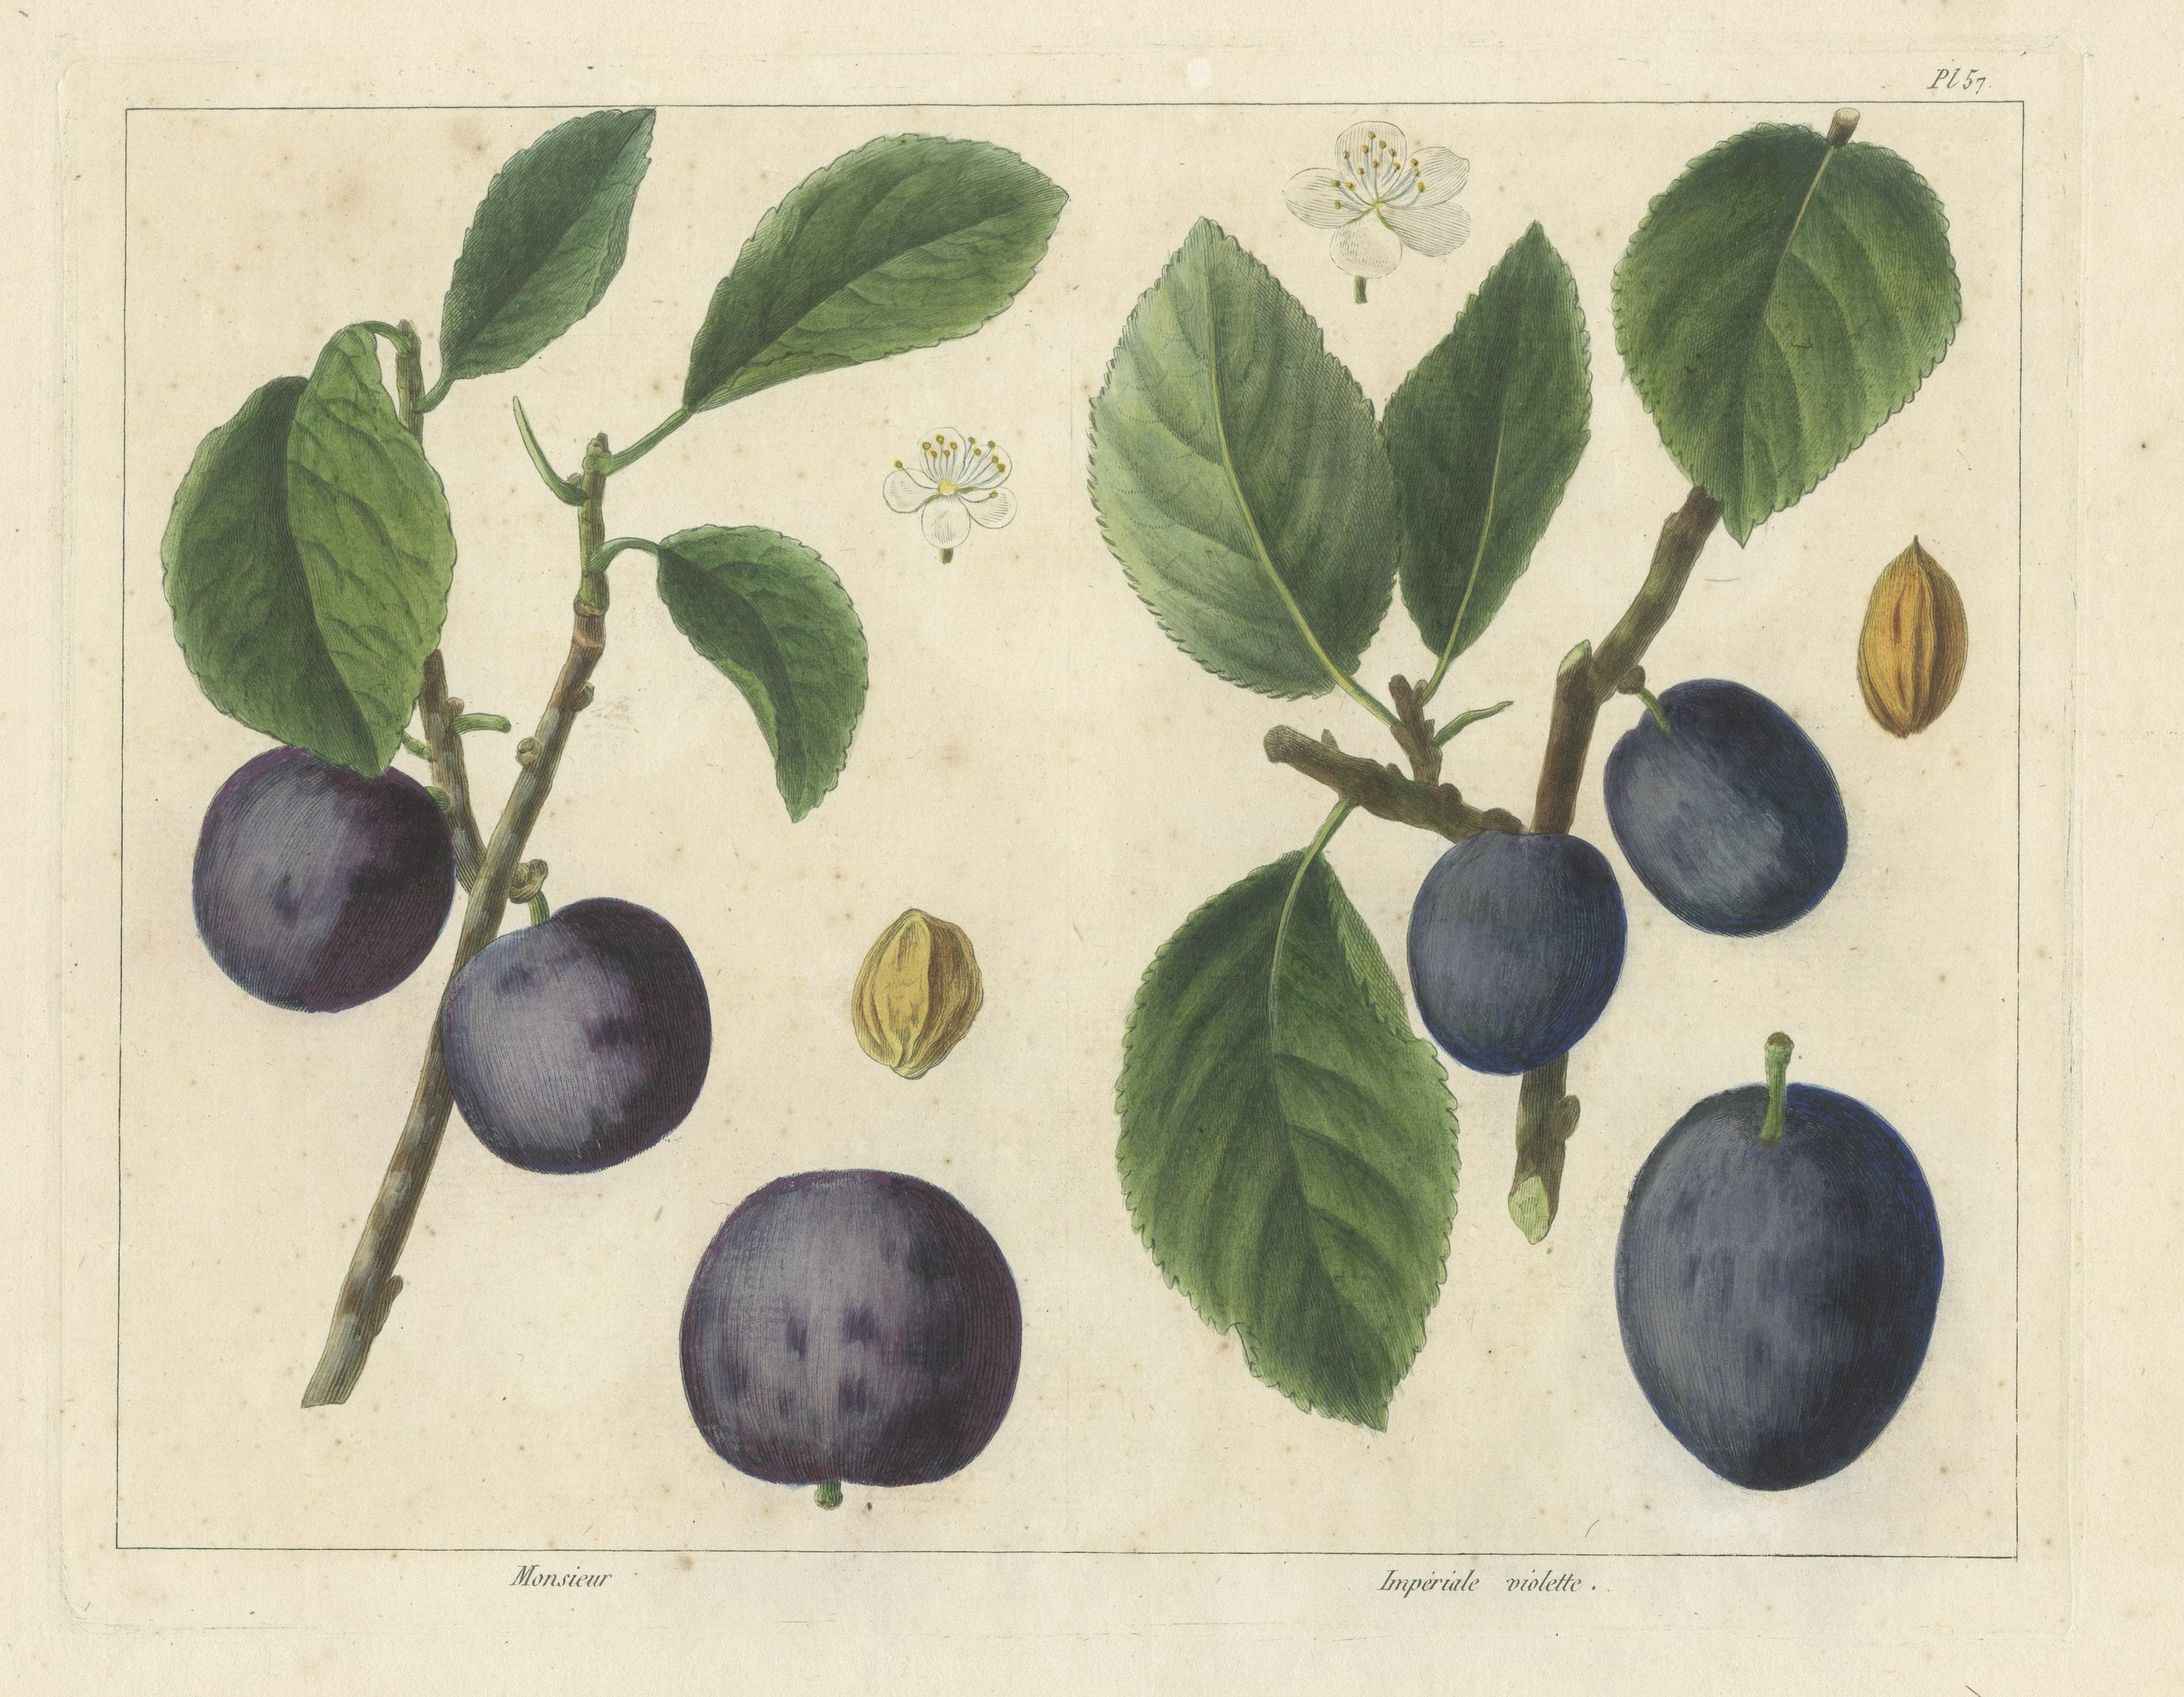 Antique print of plum varieties titled 'Monsieur - Impériale violette'. This print originates from 'Le Jardin fruitier, contenant l'histoire, la description, la culture et les usages des arbres fruitiers, des fraisiers, et des meilleures espèces de